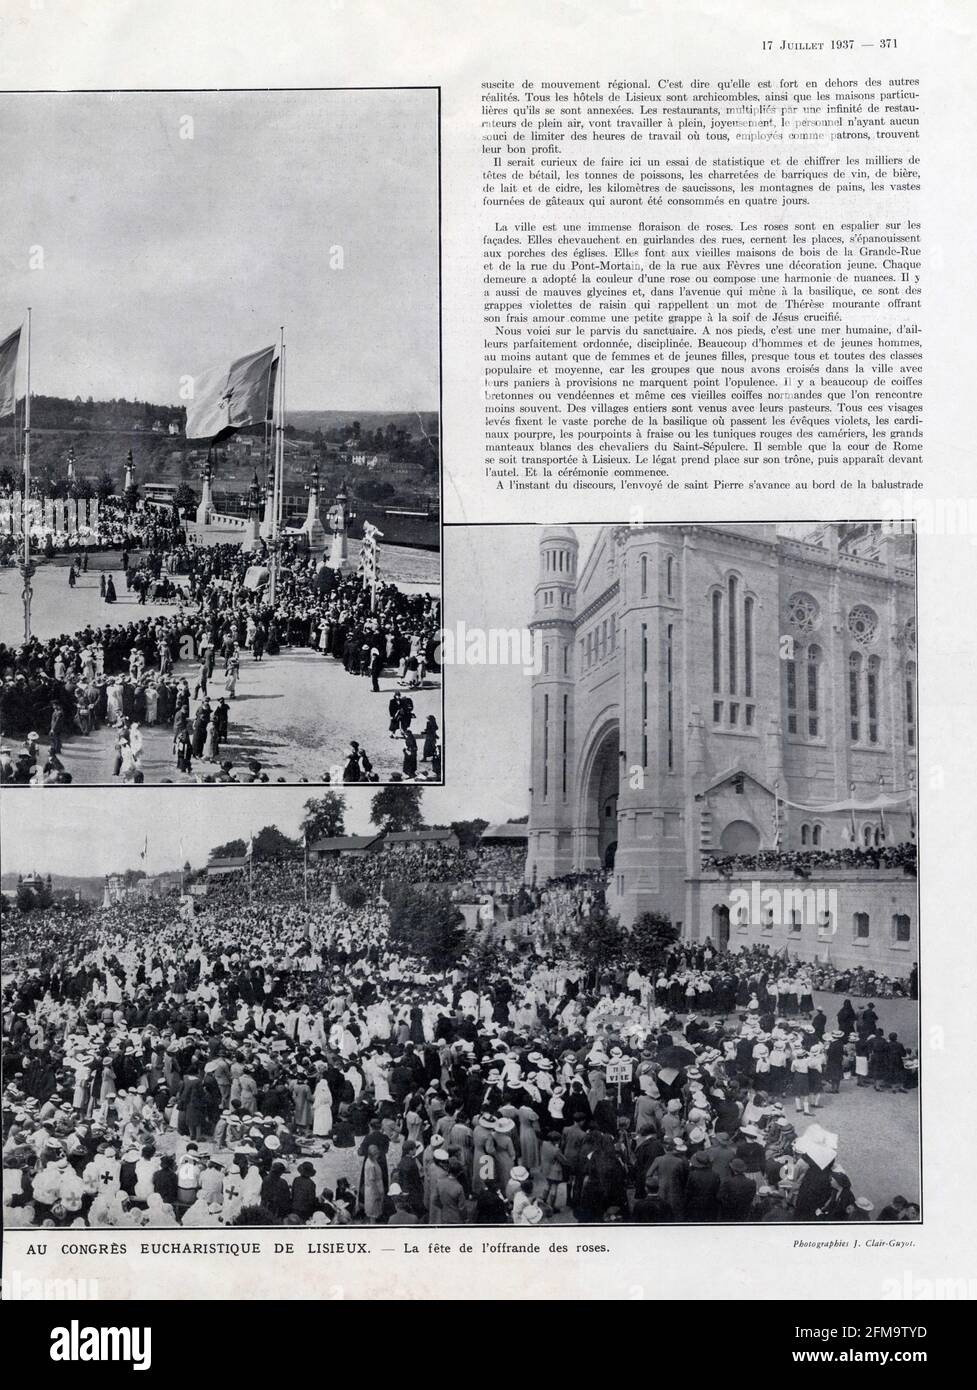 Au congrès eucharistique de Lisieux . La fête de l'offrande des roses. 1937. Stock Photo